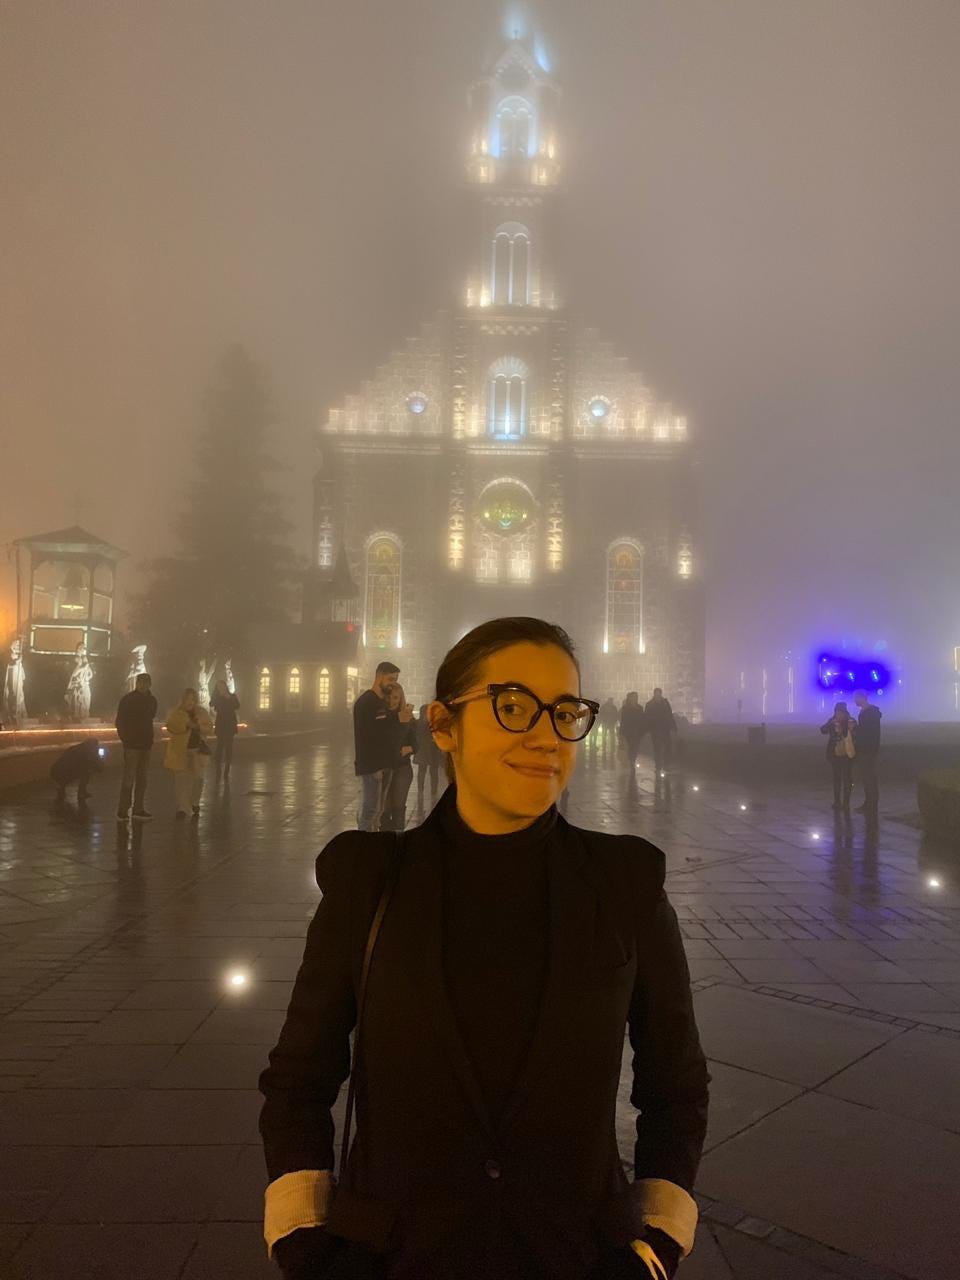 Primeiro plano: eu de cabelo preso, blazer preto sobre suéter preto e óculos. Fundo: igreja coberta por muita névoa.